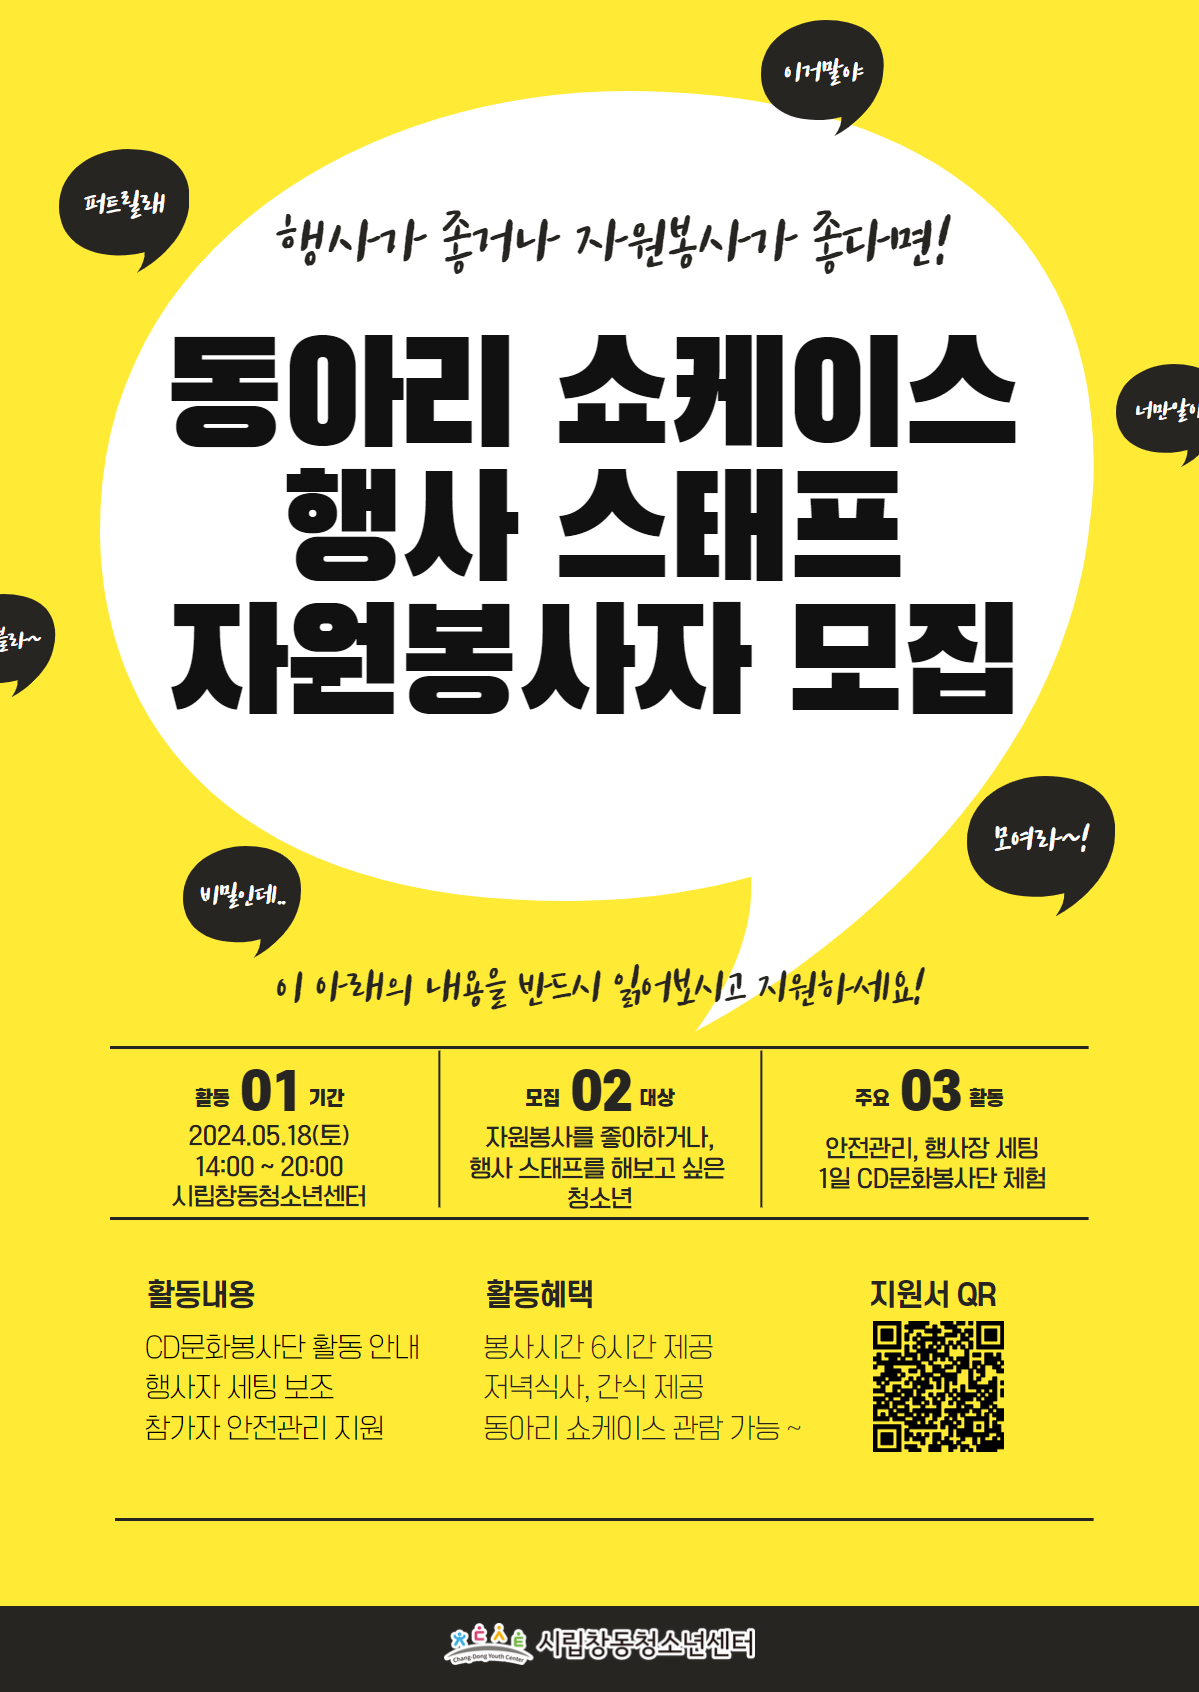 시립창동청소년센터 동아리 쇼케이스 행사 스태프(자원봉사자) 모집